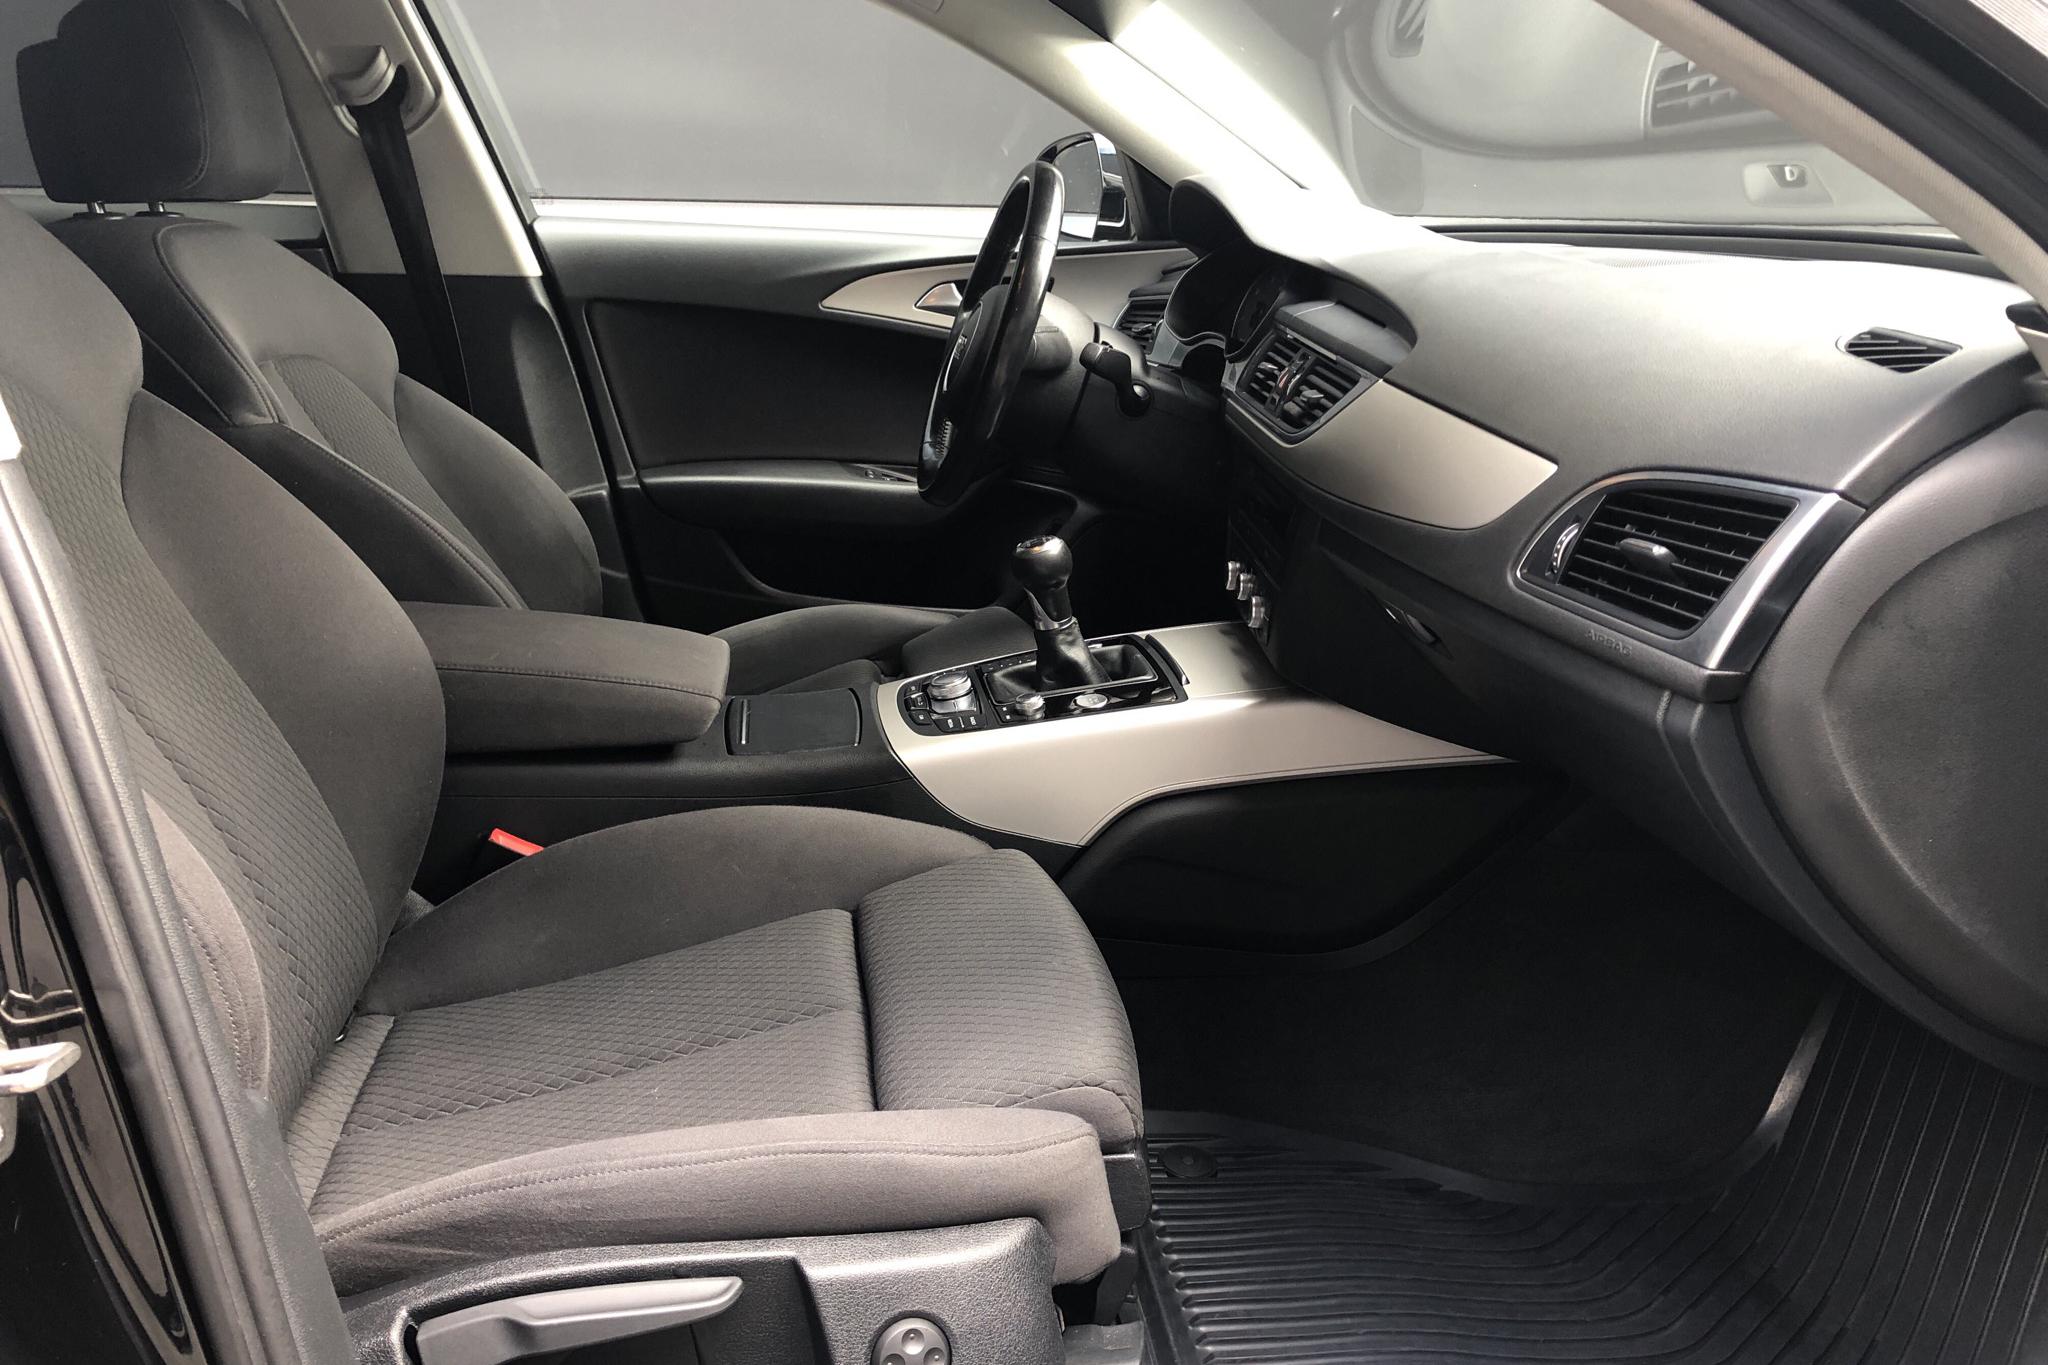 Audi A6 2.0 TDI Avant (190hk) - 13 530 mil - Manuell - svart - 2016